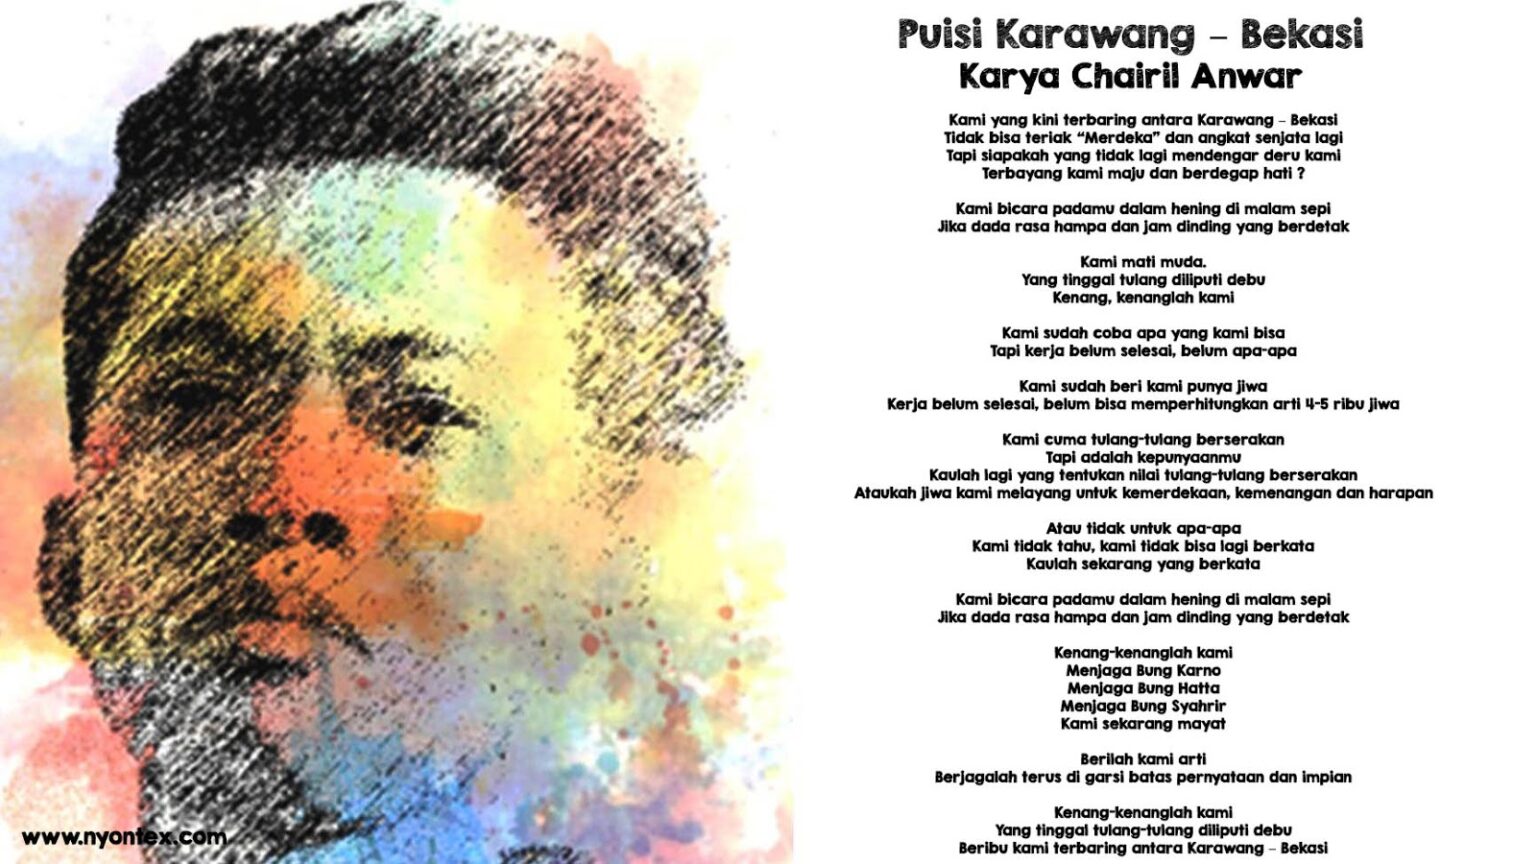 Puisi Karawang – Bekasi Karya Chairil Anwar - Freedomnesia